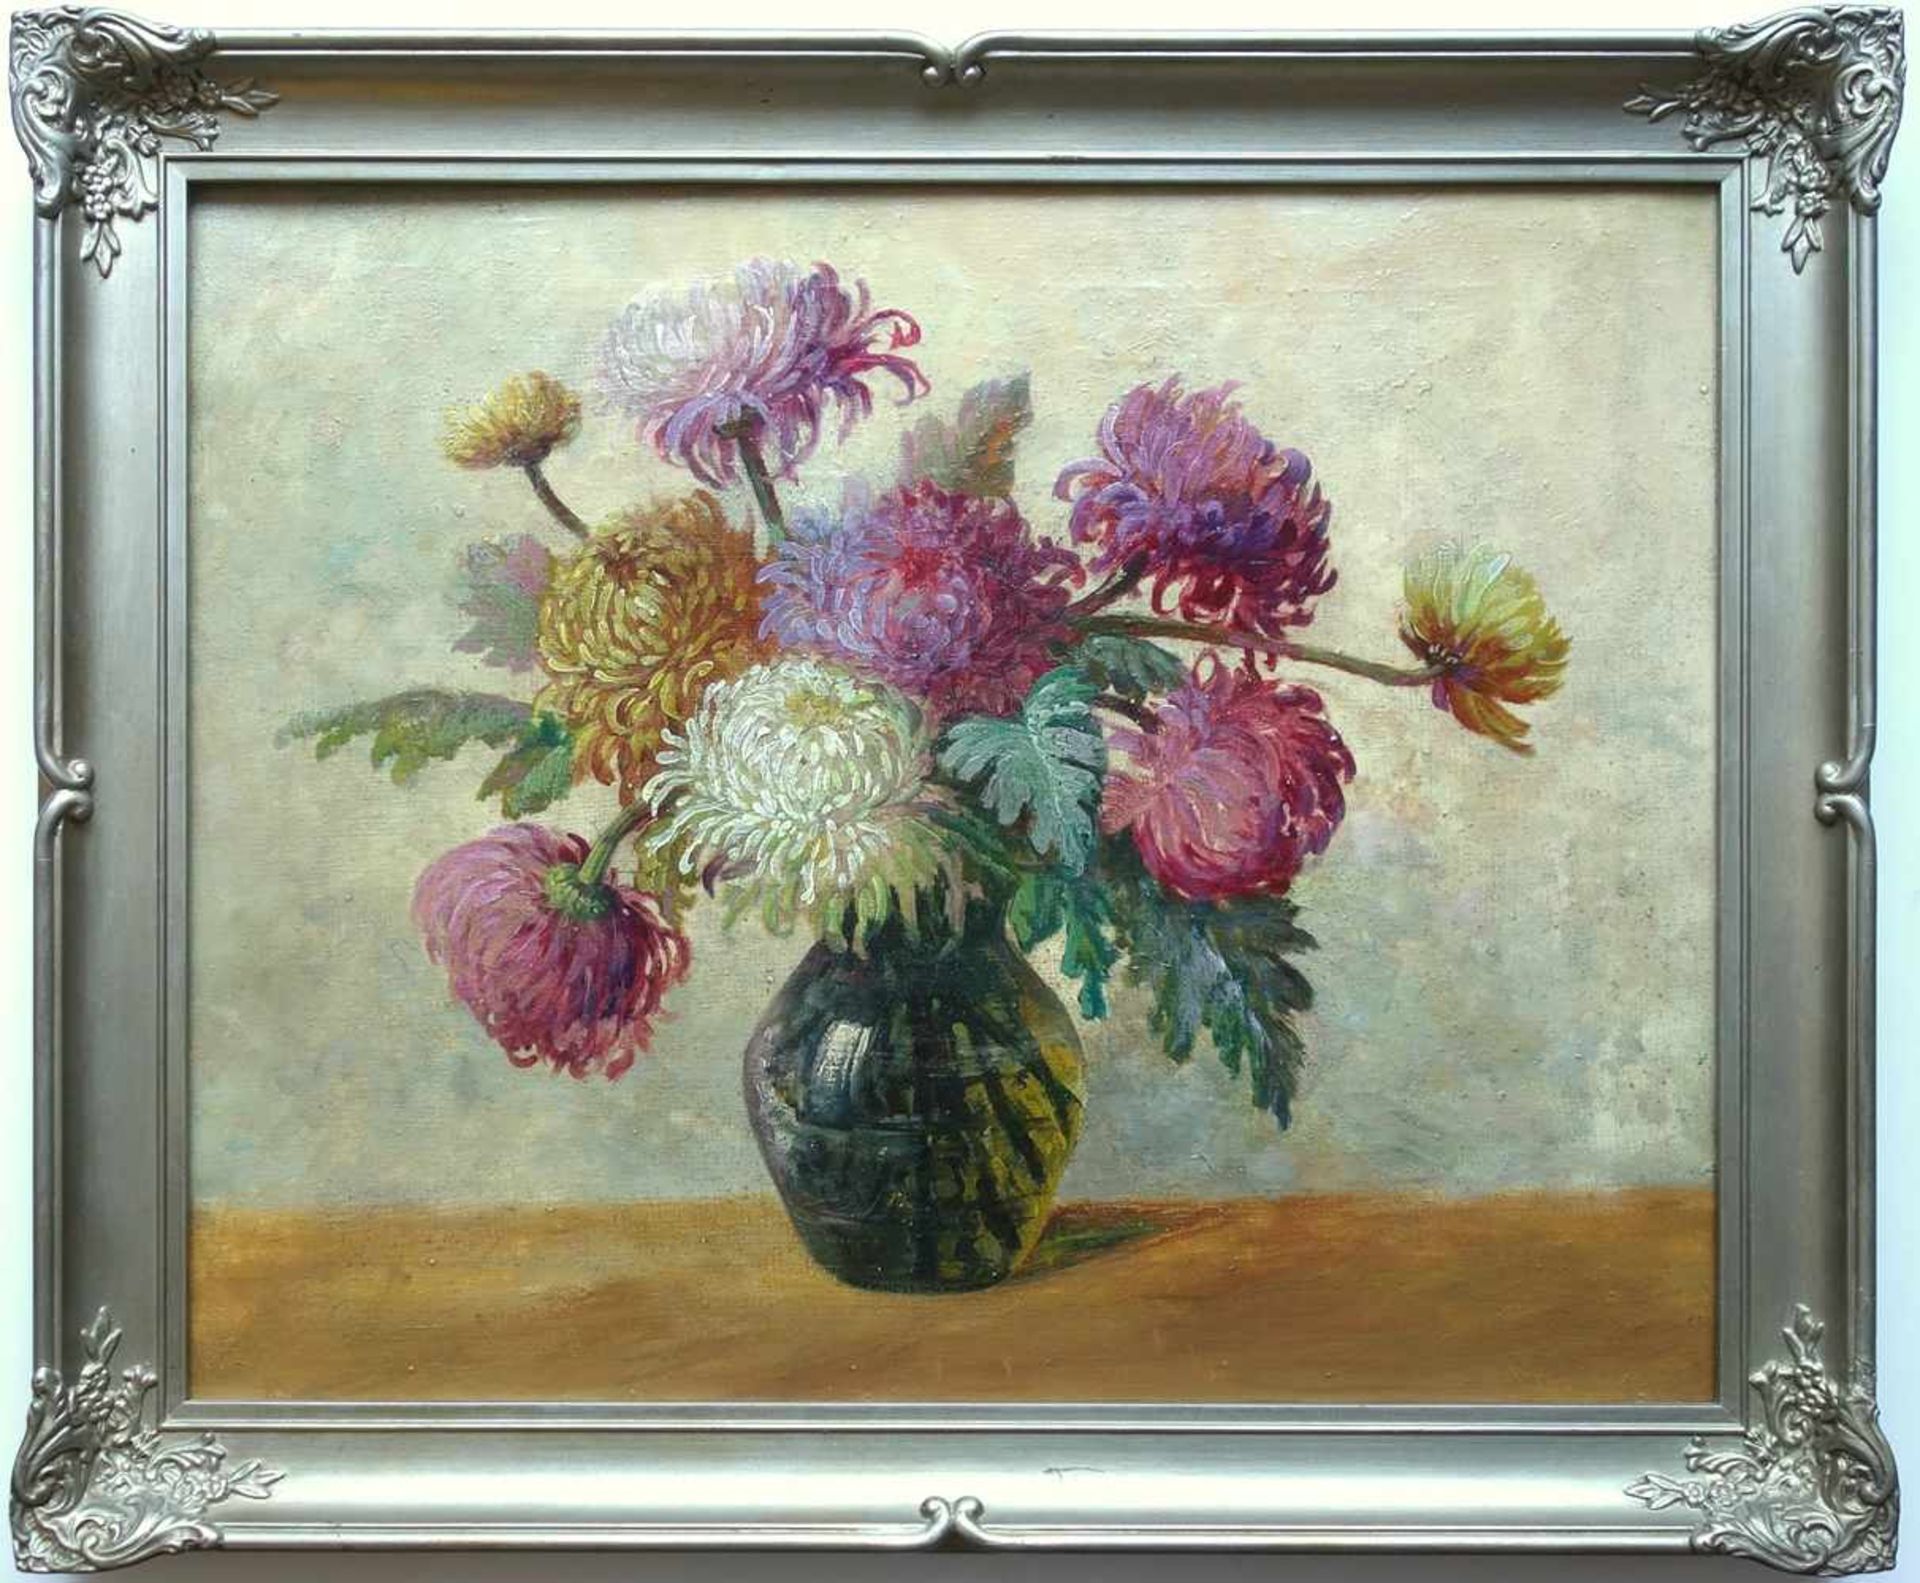 unbekannter Maler, "Stillleben mit Chrysanthemen", 1930er Jahre, Öl/Leinwand, rückseitig unleserlich